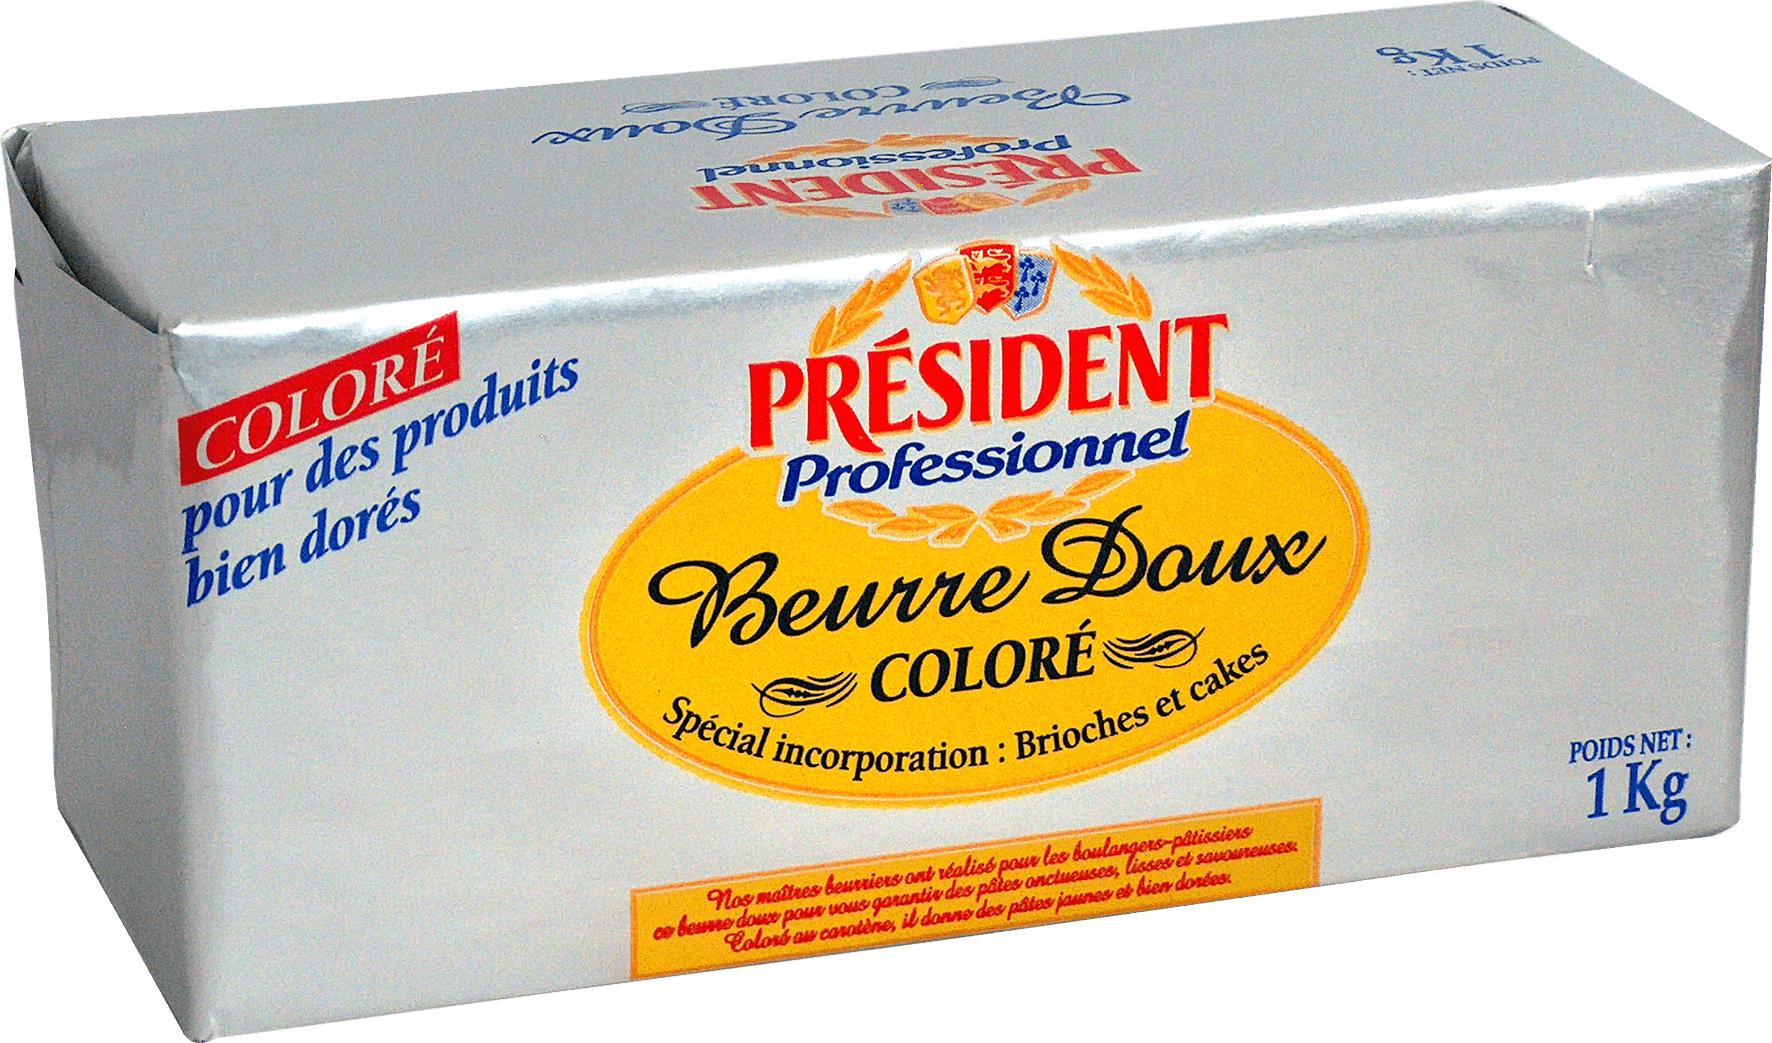 Beurre doux coloré motte 1kg Président Professionnel